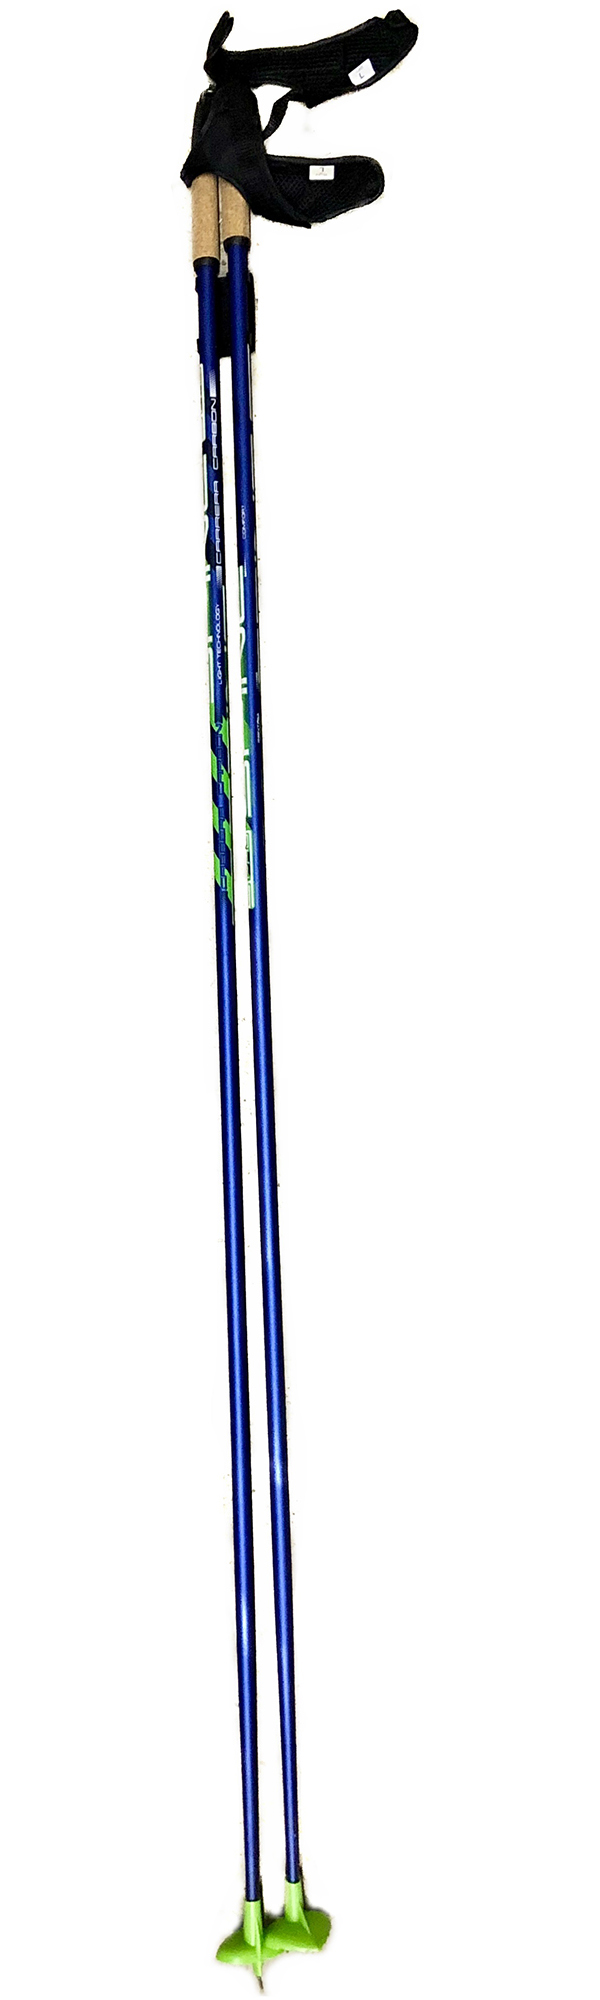 Палки лыжные SPINE Carrera Carbon 10016 1,70 м Сине-зеленый